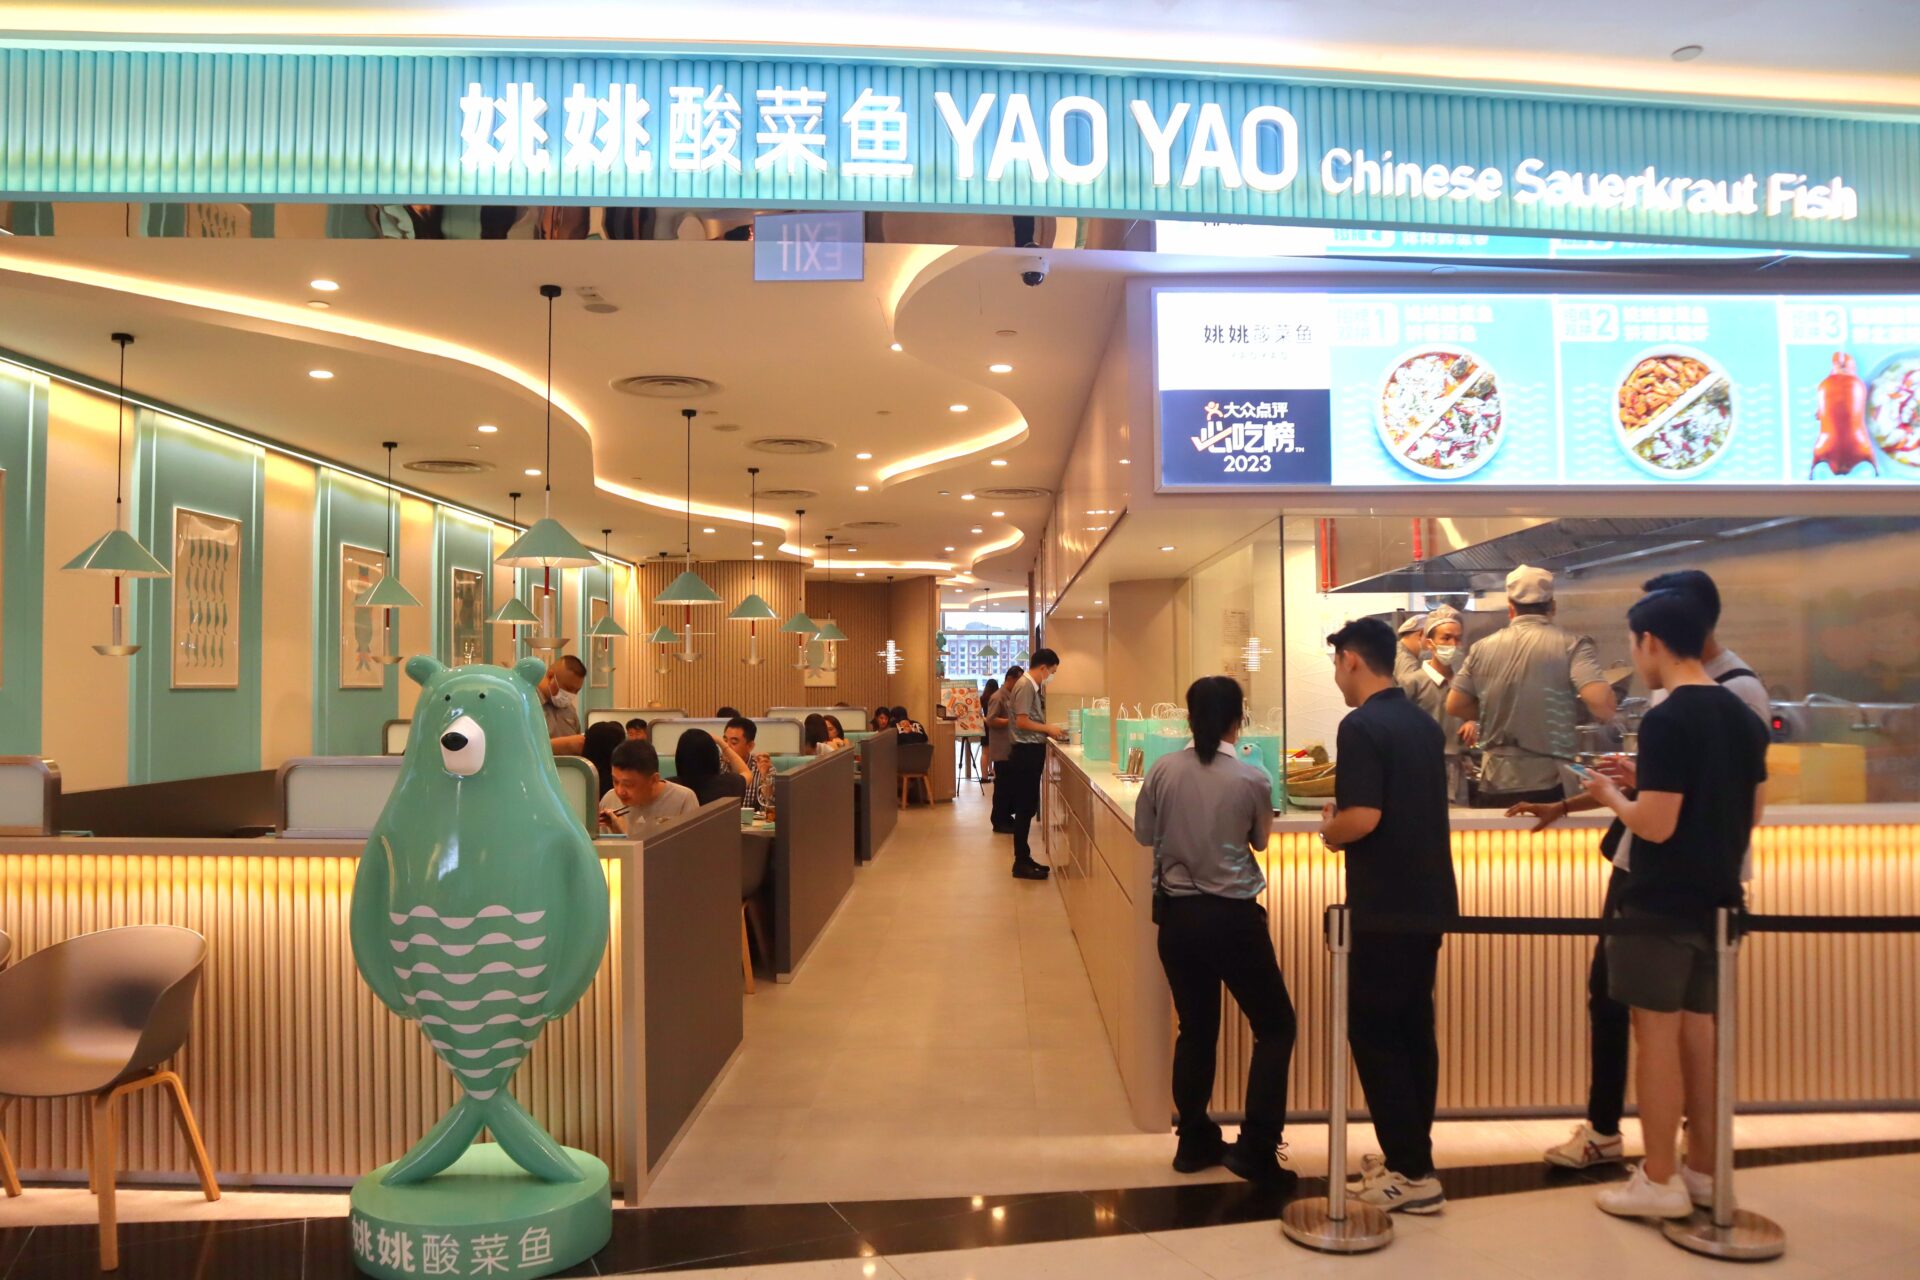 yao yao sauerkraut fish - restaurant entrance